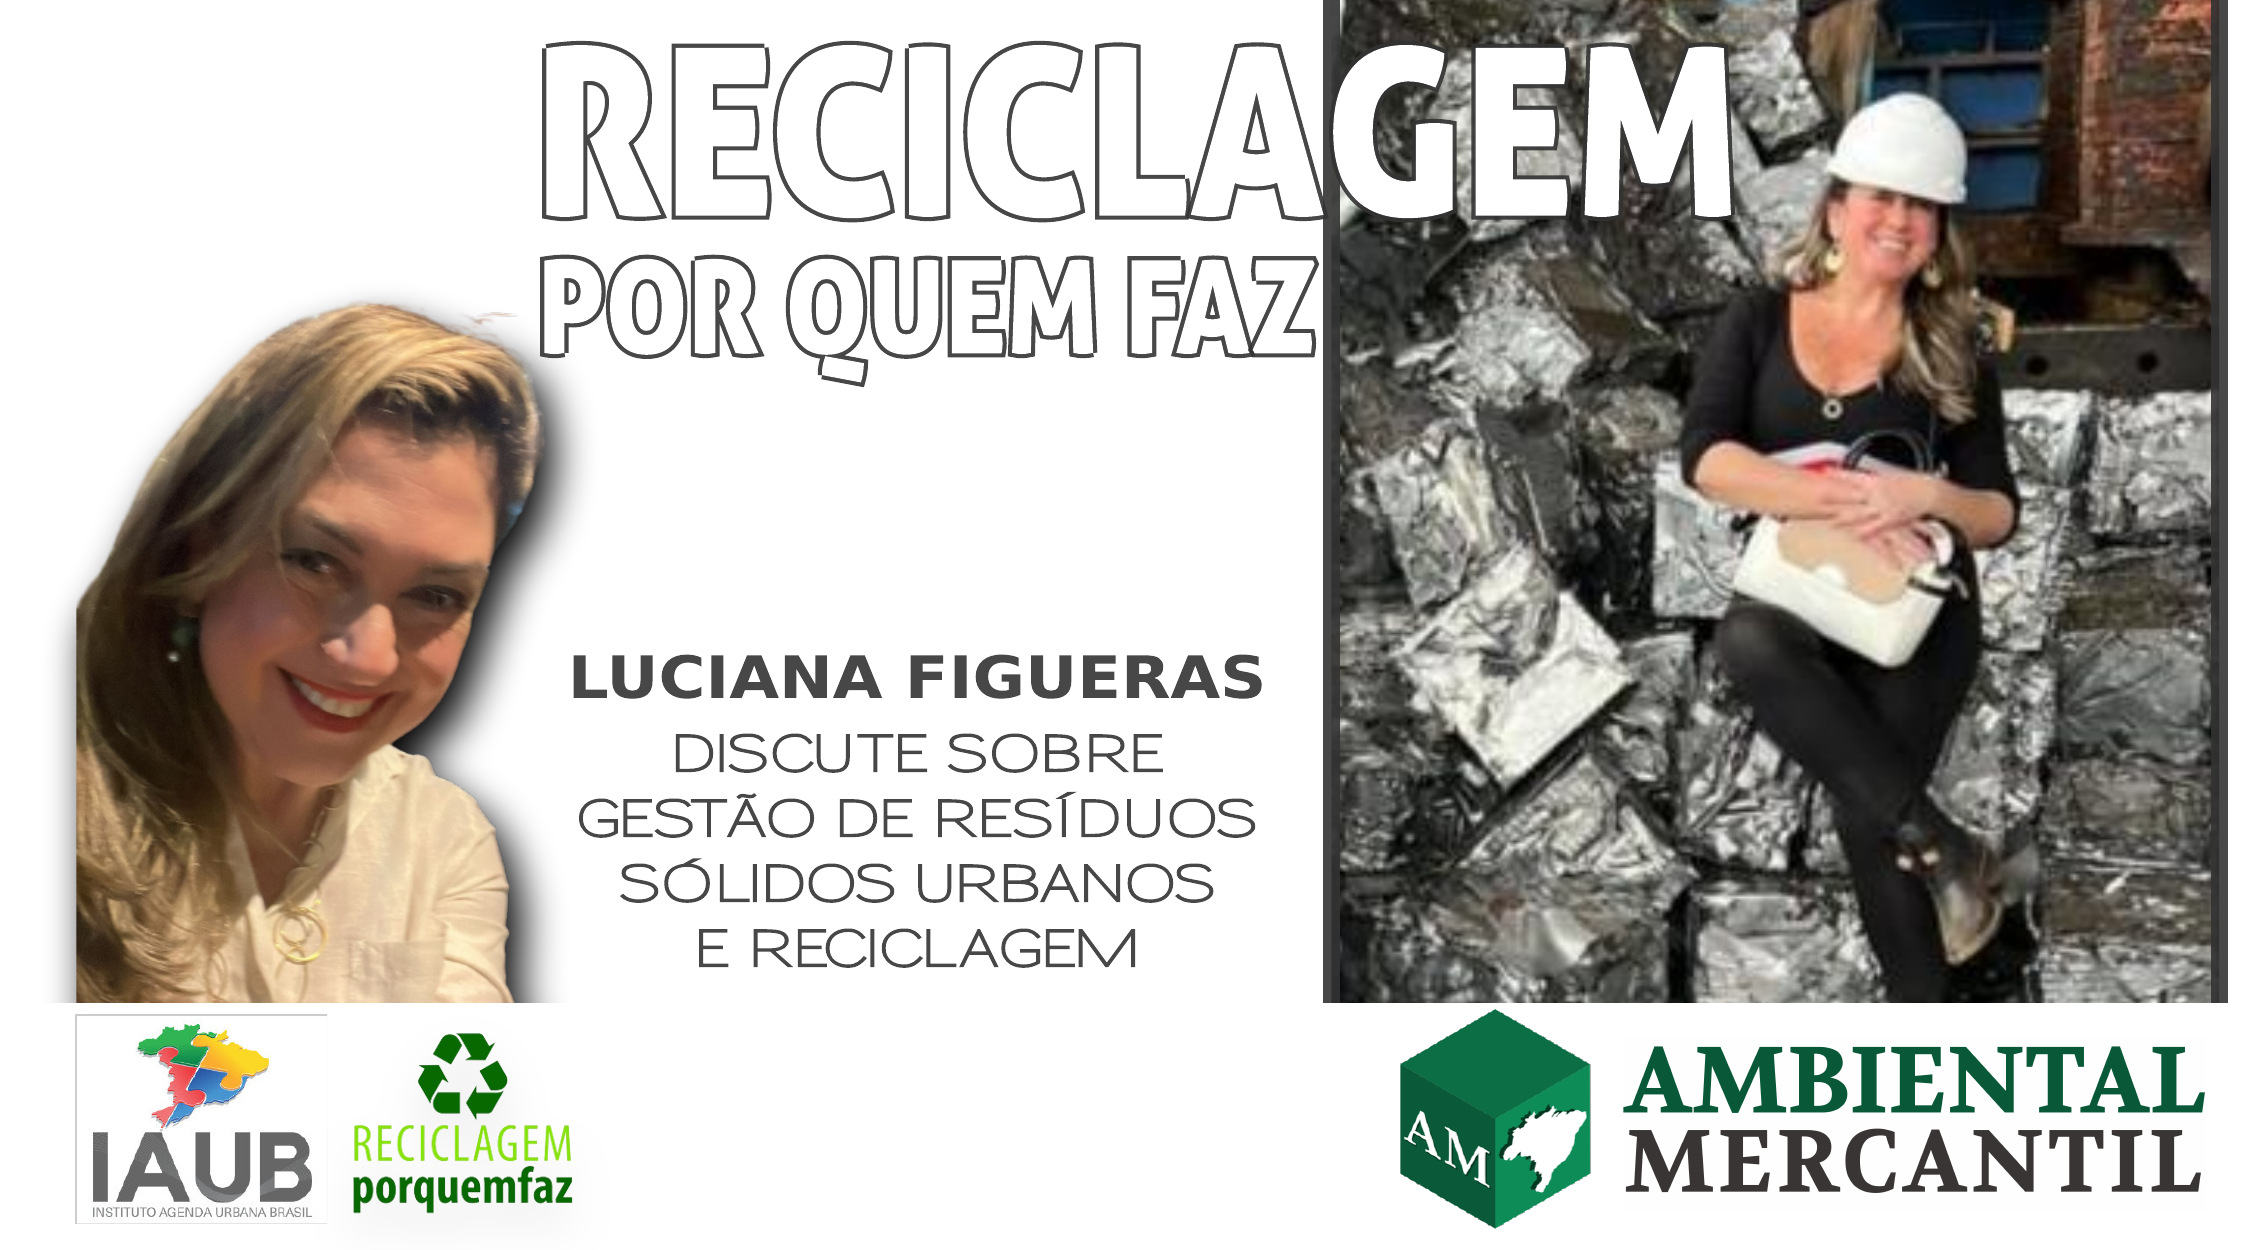 Luciana Figueras é Advogada e Cientista Política e colunista do editorial AMBIENTAL MERCANTIL RESÍDUOS E RECICLAGEM